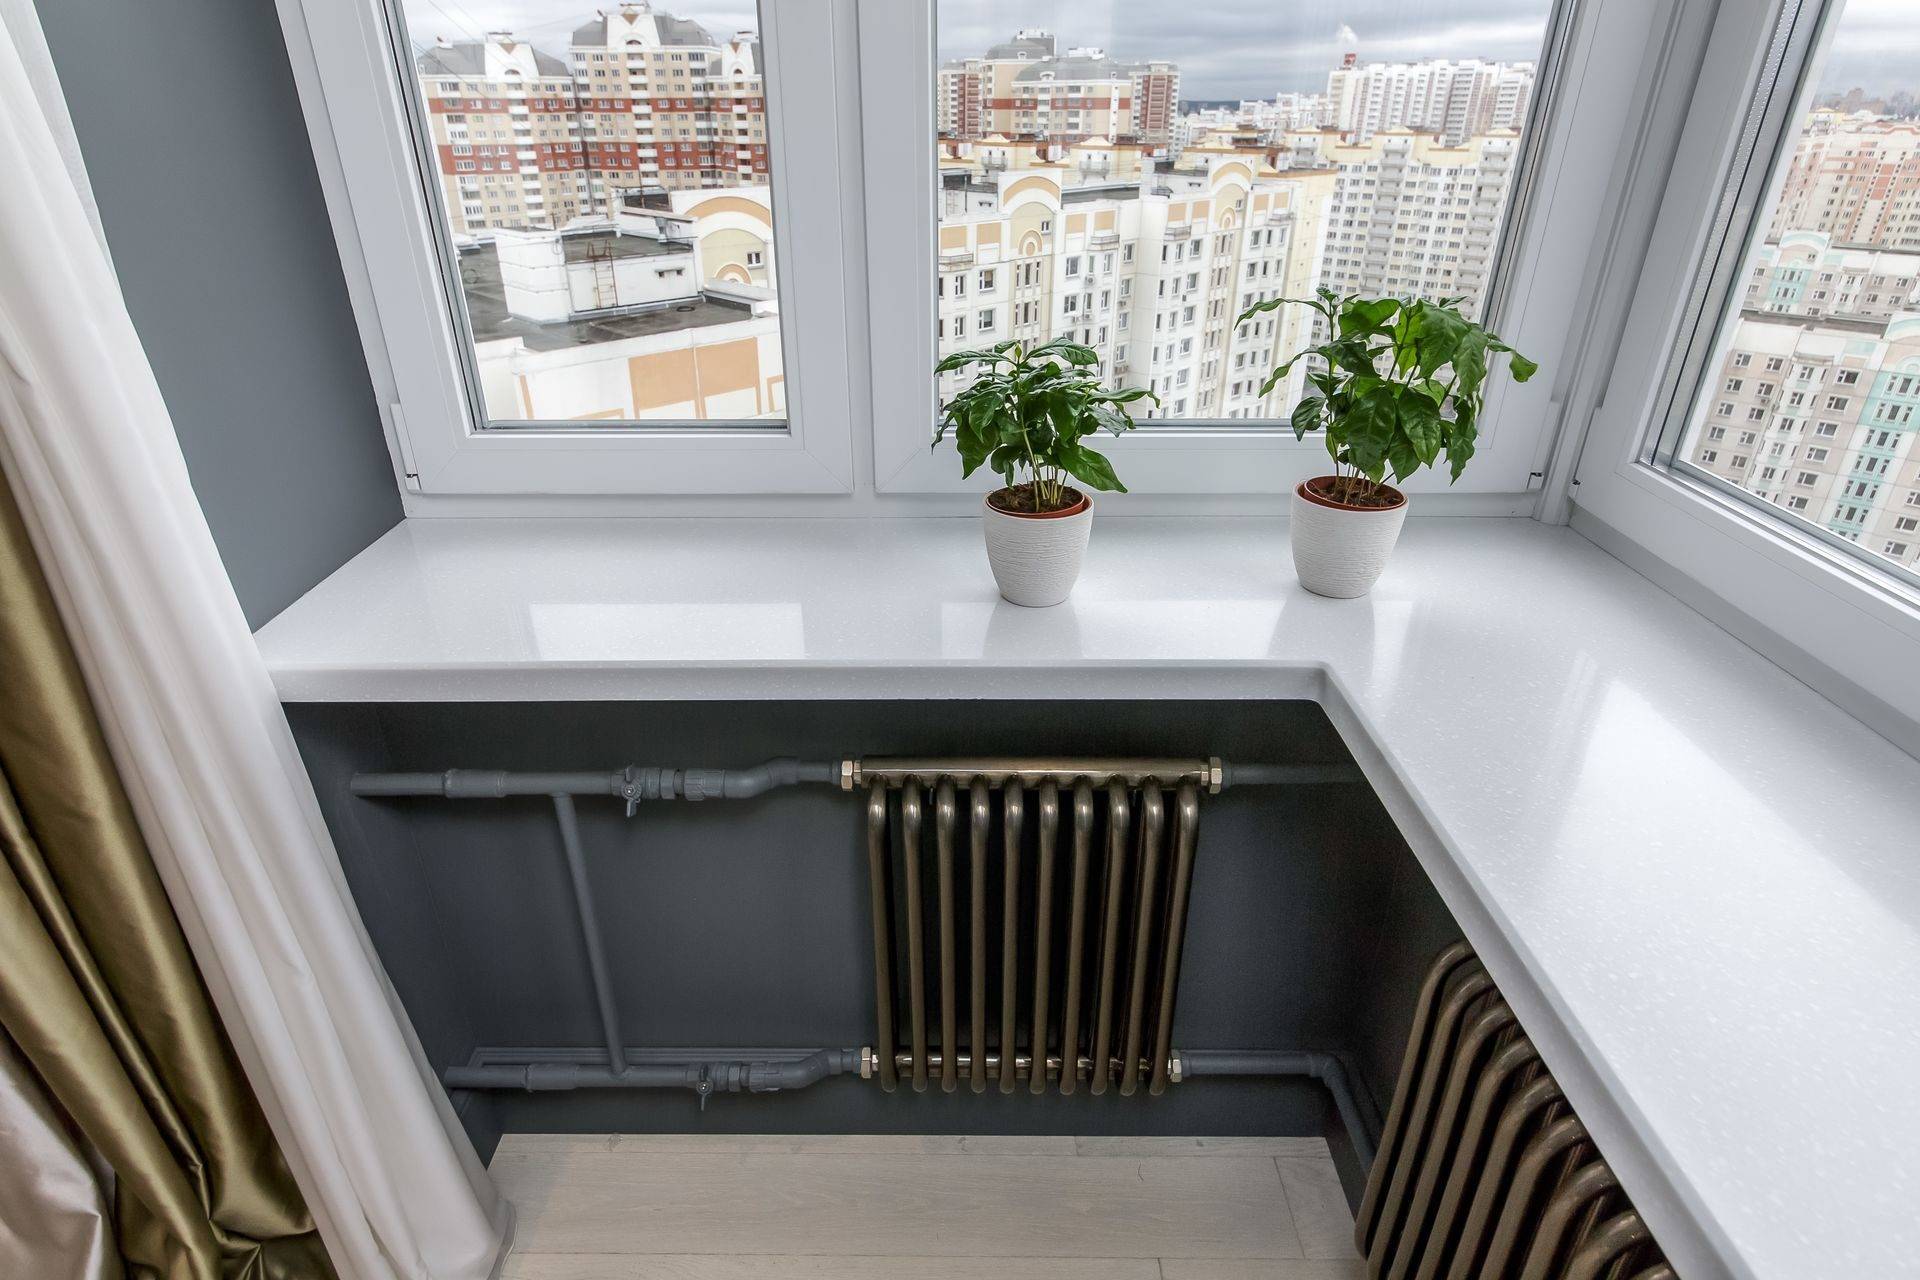 Обогреватель на балкон: какой тип установить, чем хороши инфракрасные обогревательные приборы